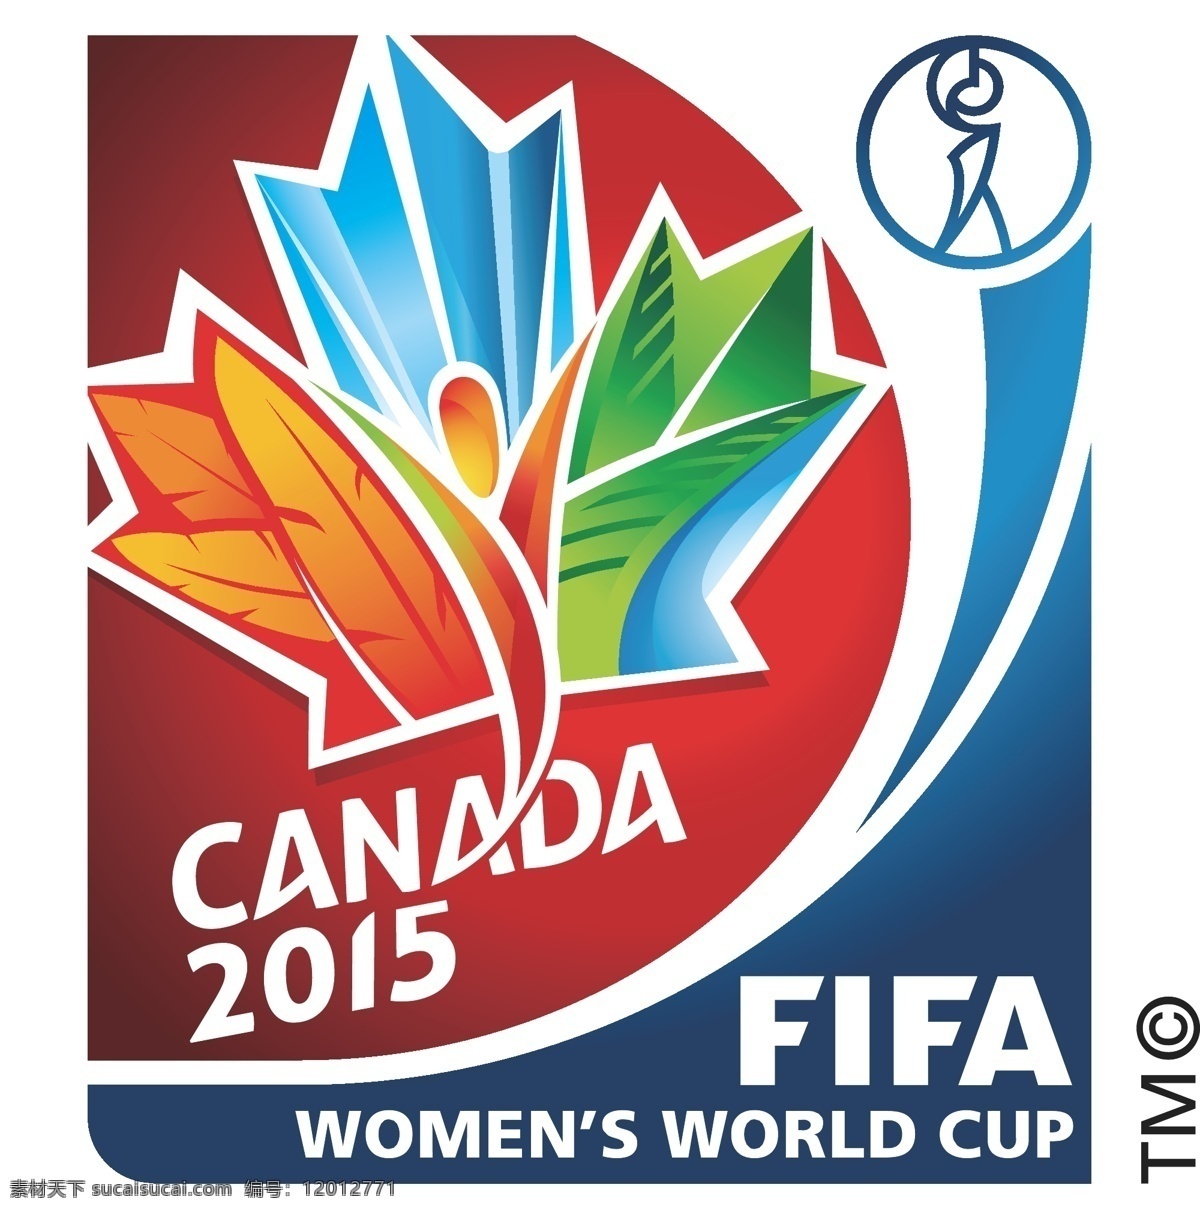 2015 加拿大女足 世界杯 徽标 logo设计 比赛 加拿大 世界 足球 女足 国际足联 杯赛 women fifa worldcup 赛事徽标 矢量图